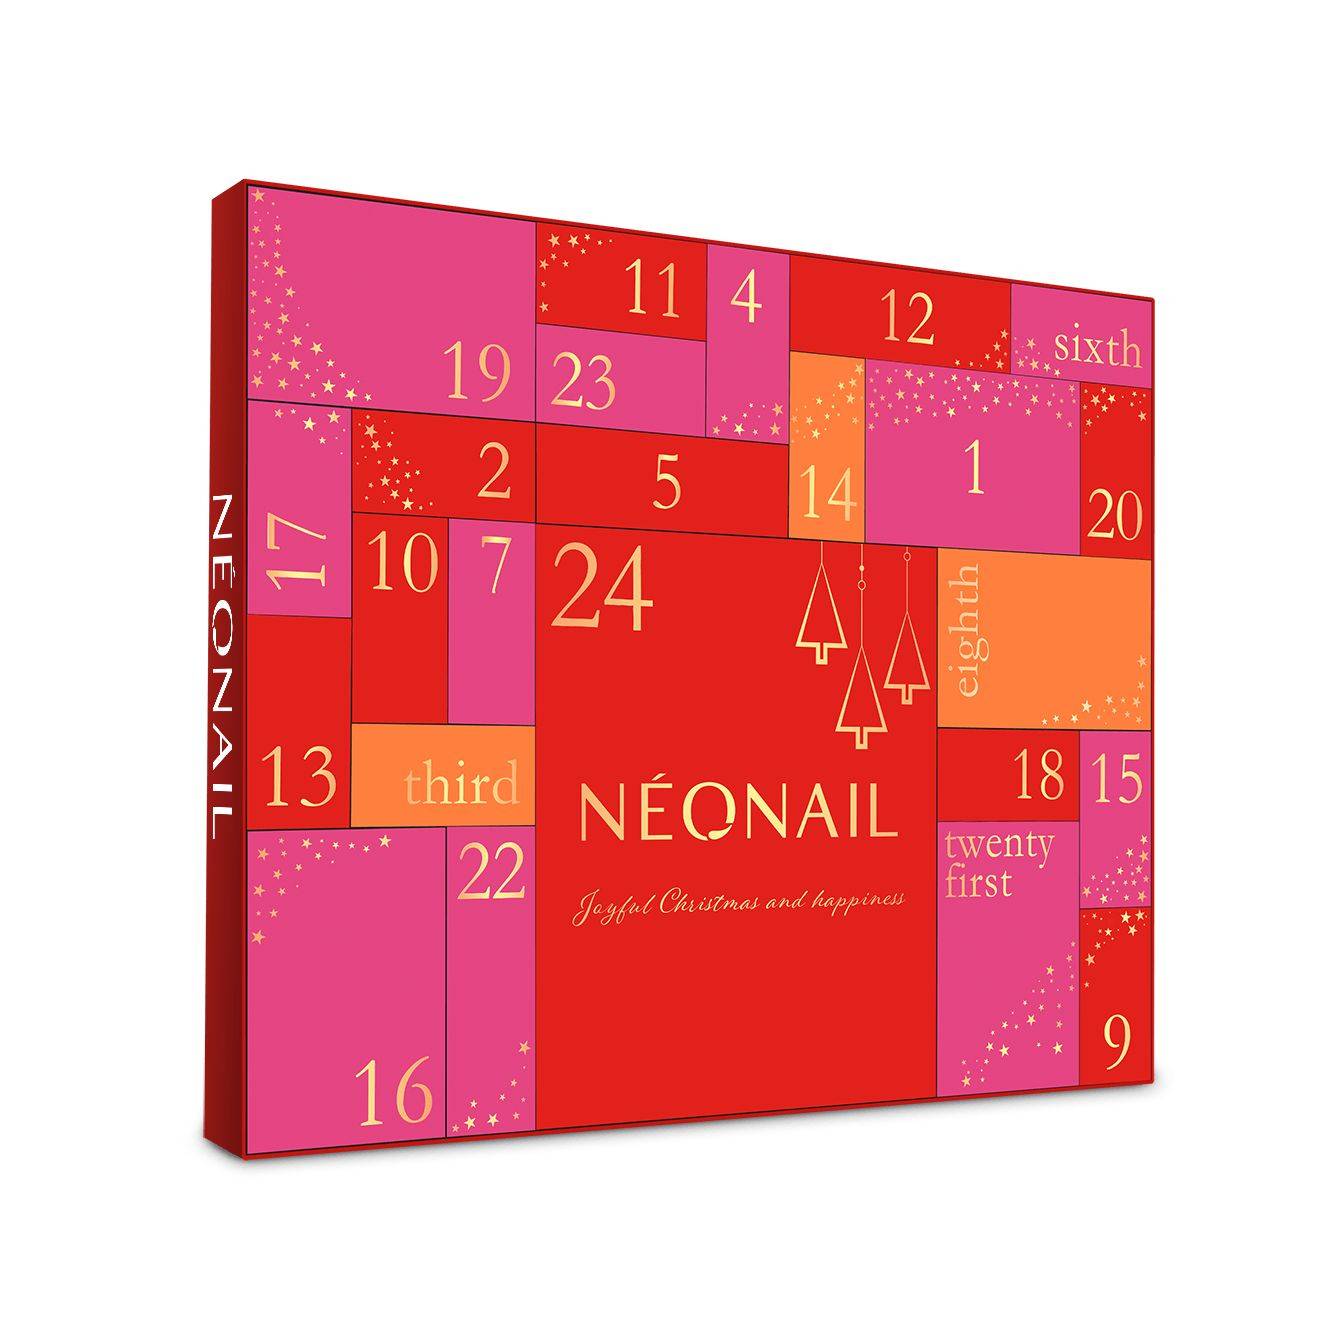 Kalendarz adwentowy NEONAIL, 299 zł (Fot. Materiały prasowe)